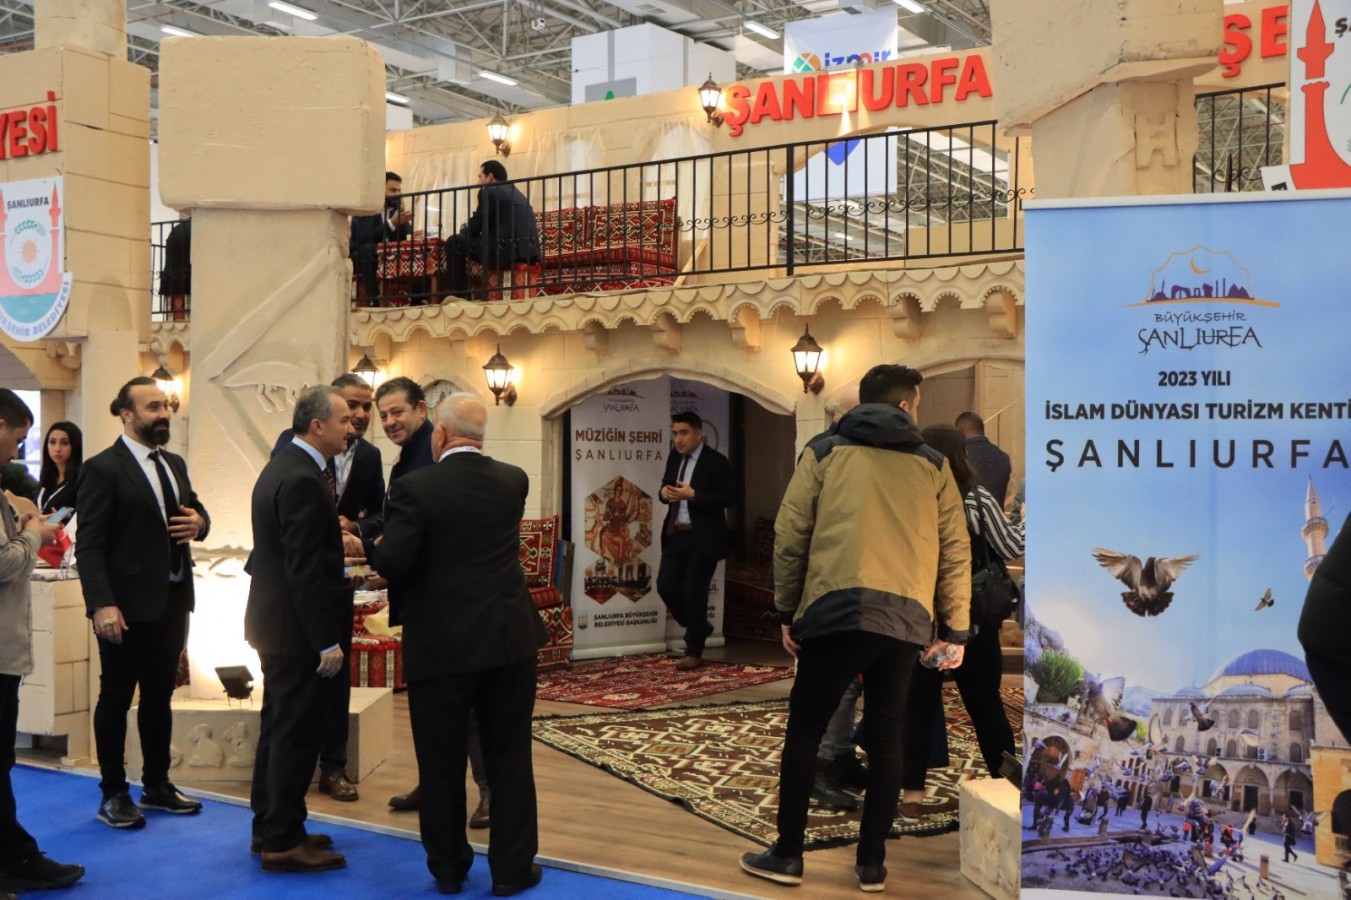 Şanlıurfa’nın Kültürel Değerleri Uluslararası İzmir Turizm Fuarında Tanıtılıyor